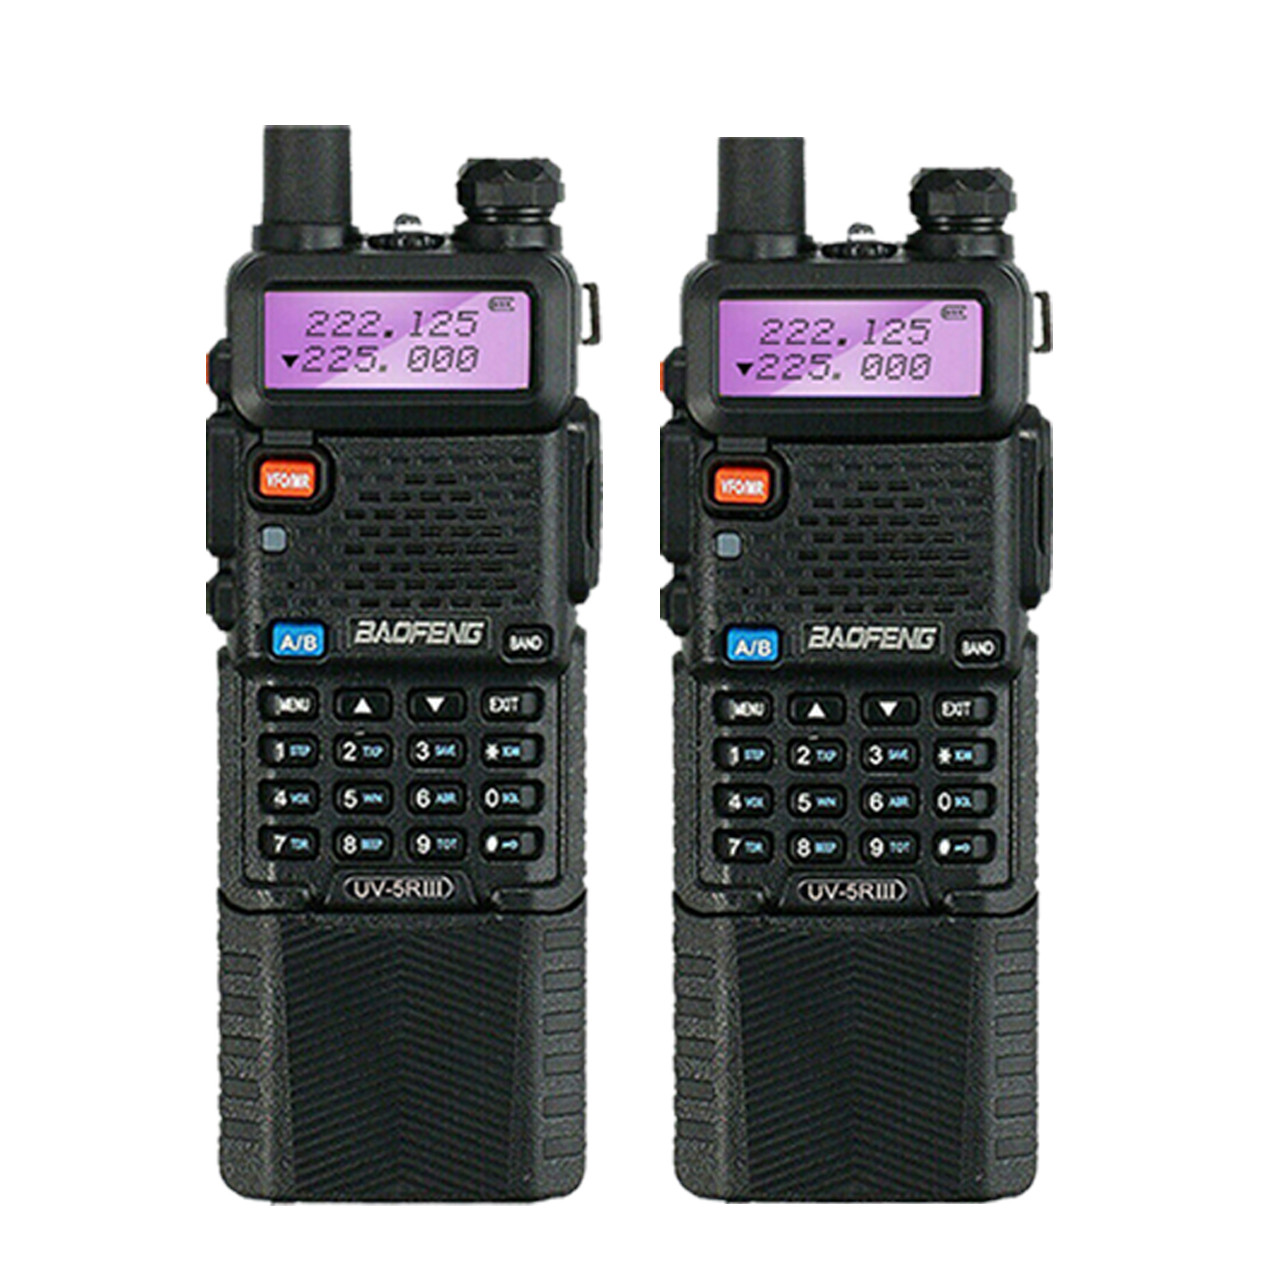 Baofeng Radio UK x BAOFENG UV-5R III Tri-Band VHF/UHF 3800mAH Walkie  Talkies Long Range Ham Radio